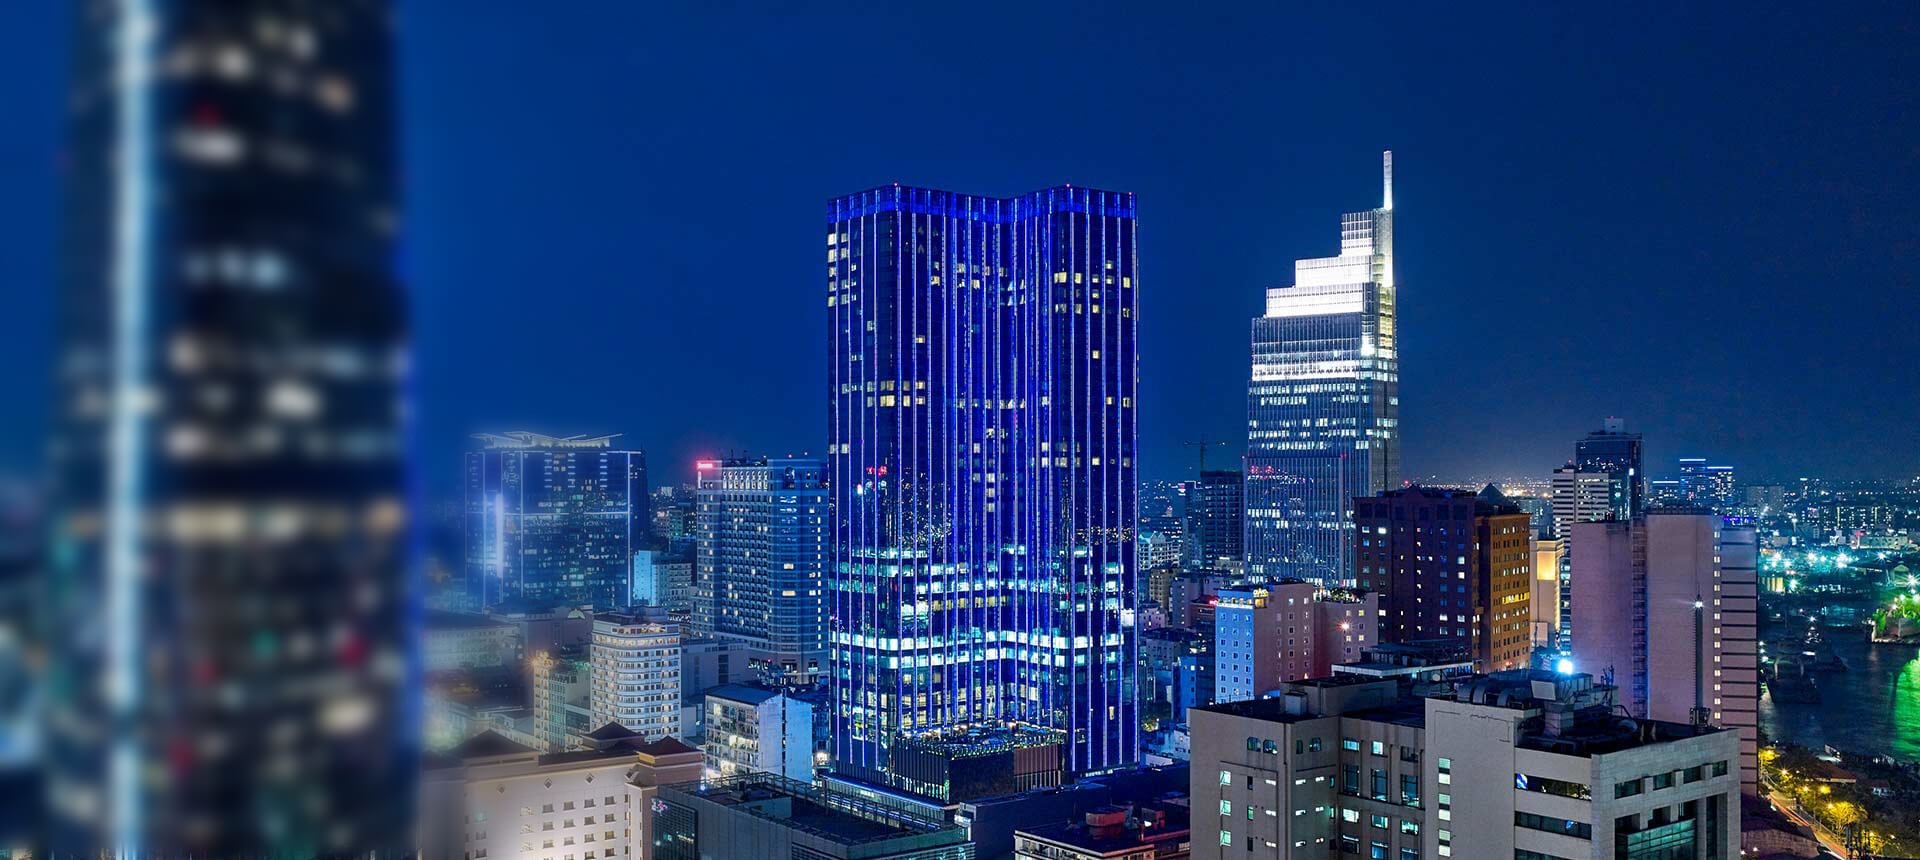 Saigon Timesquare in blue